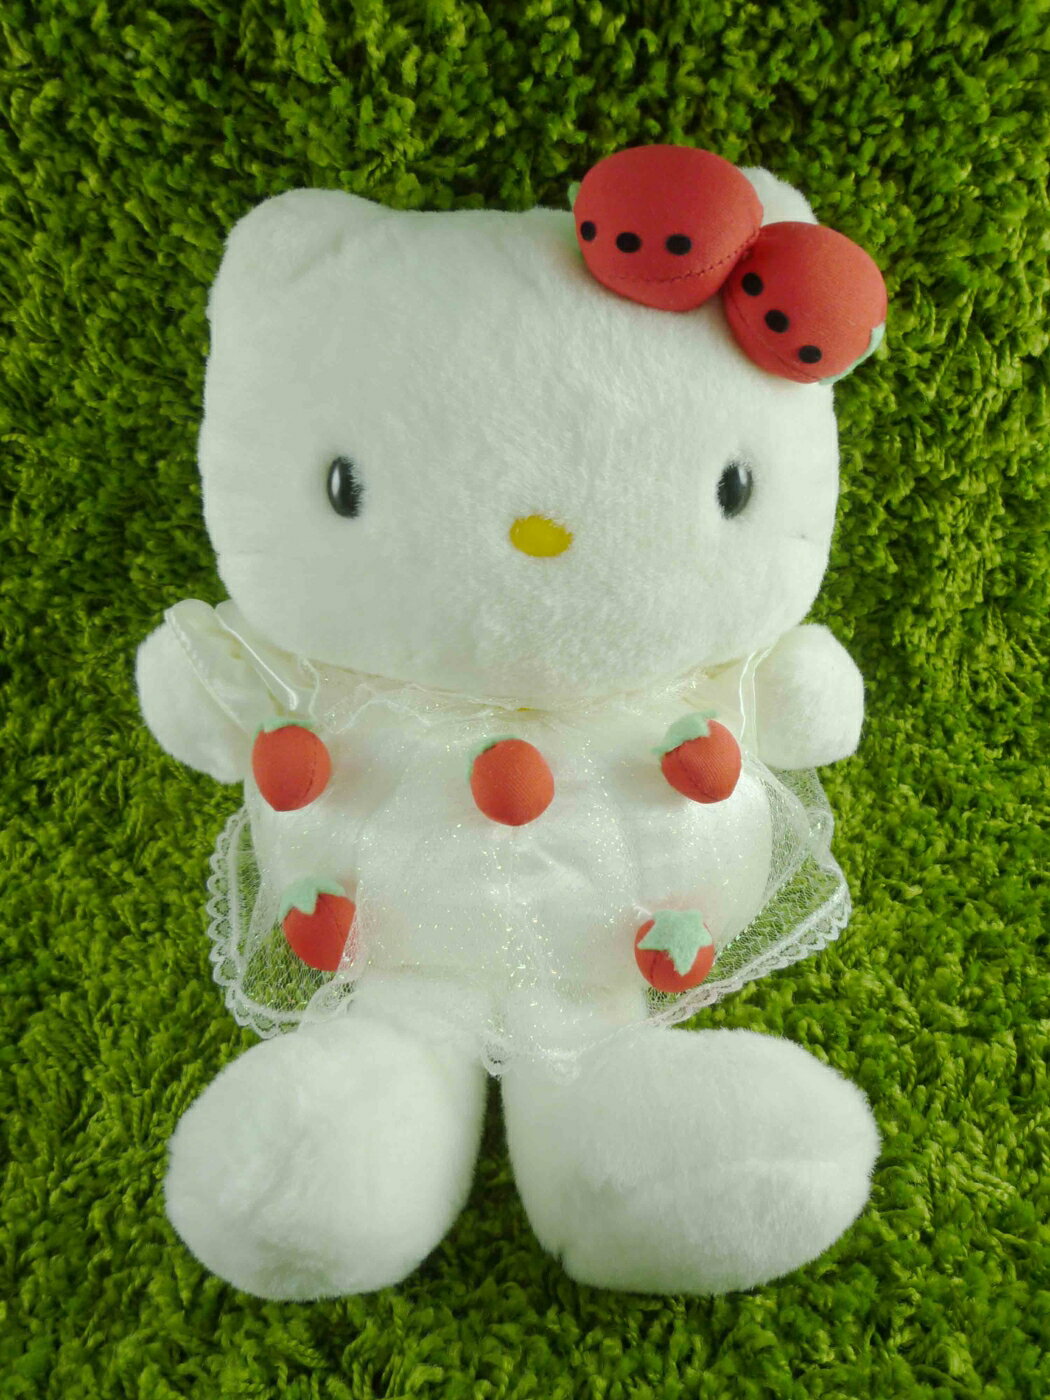 【震撼精品百貨】Hello Kitty 凱蒂貓 絨毛娃娃-草莓(L) 震撼日式精品百貨